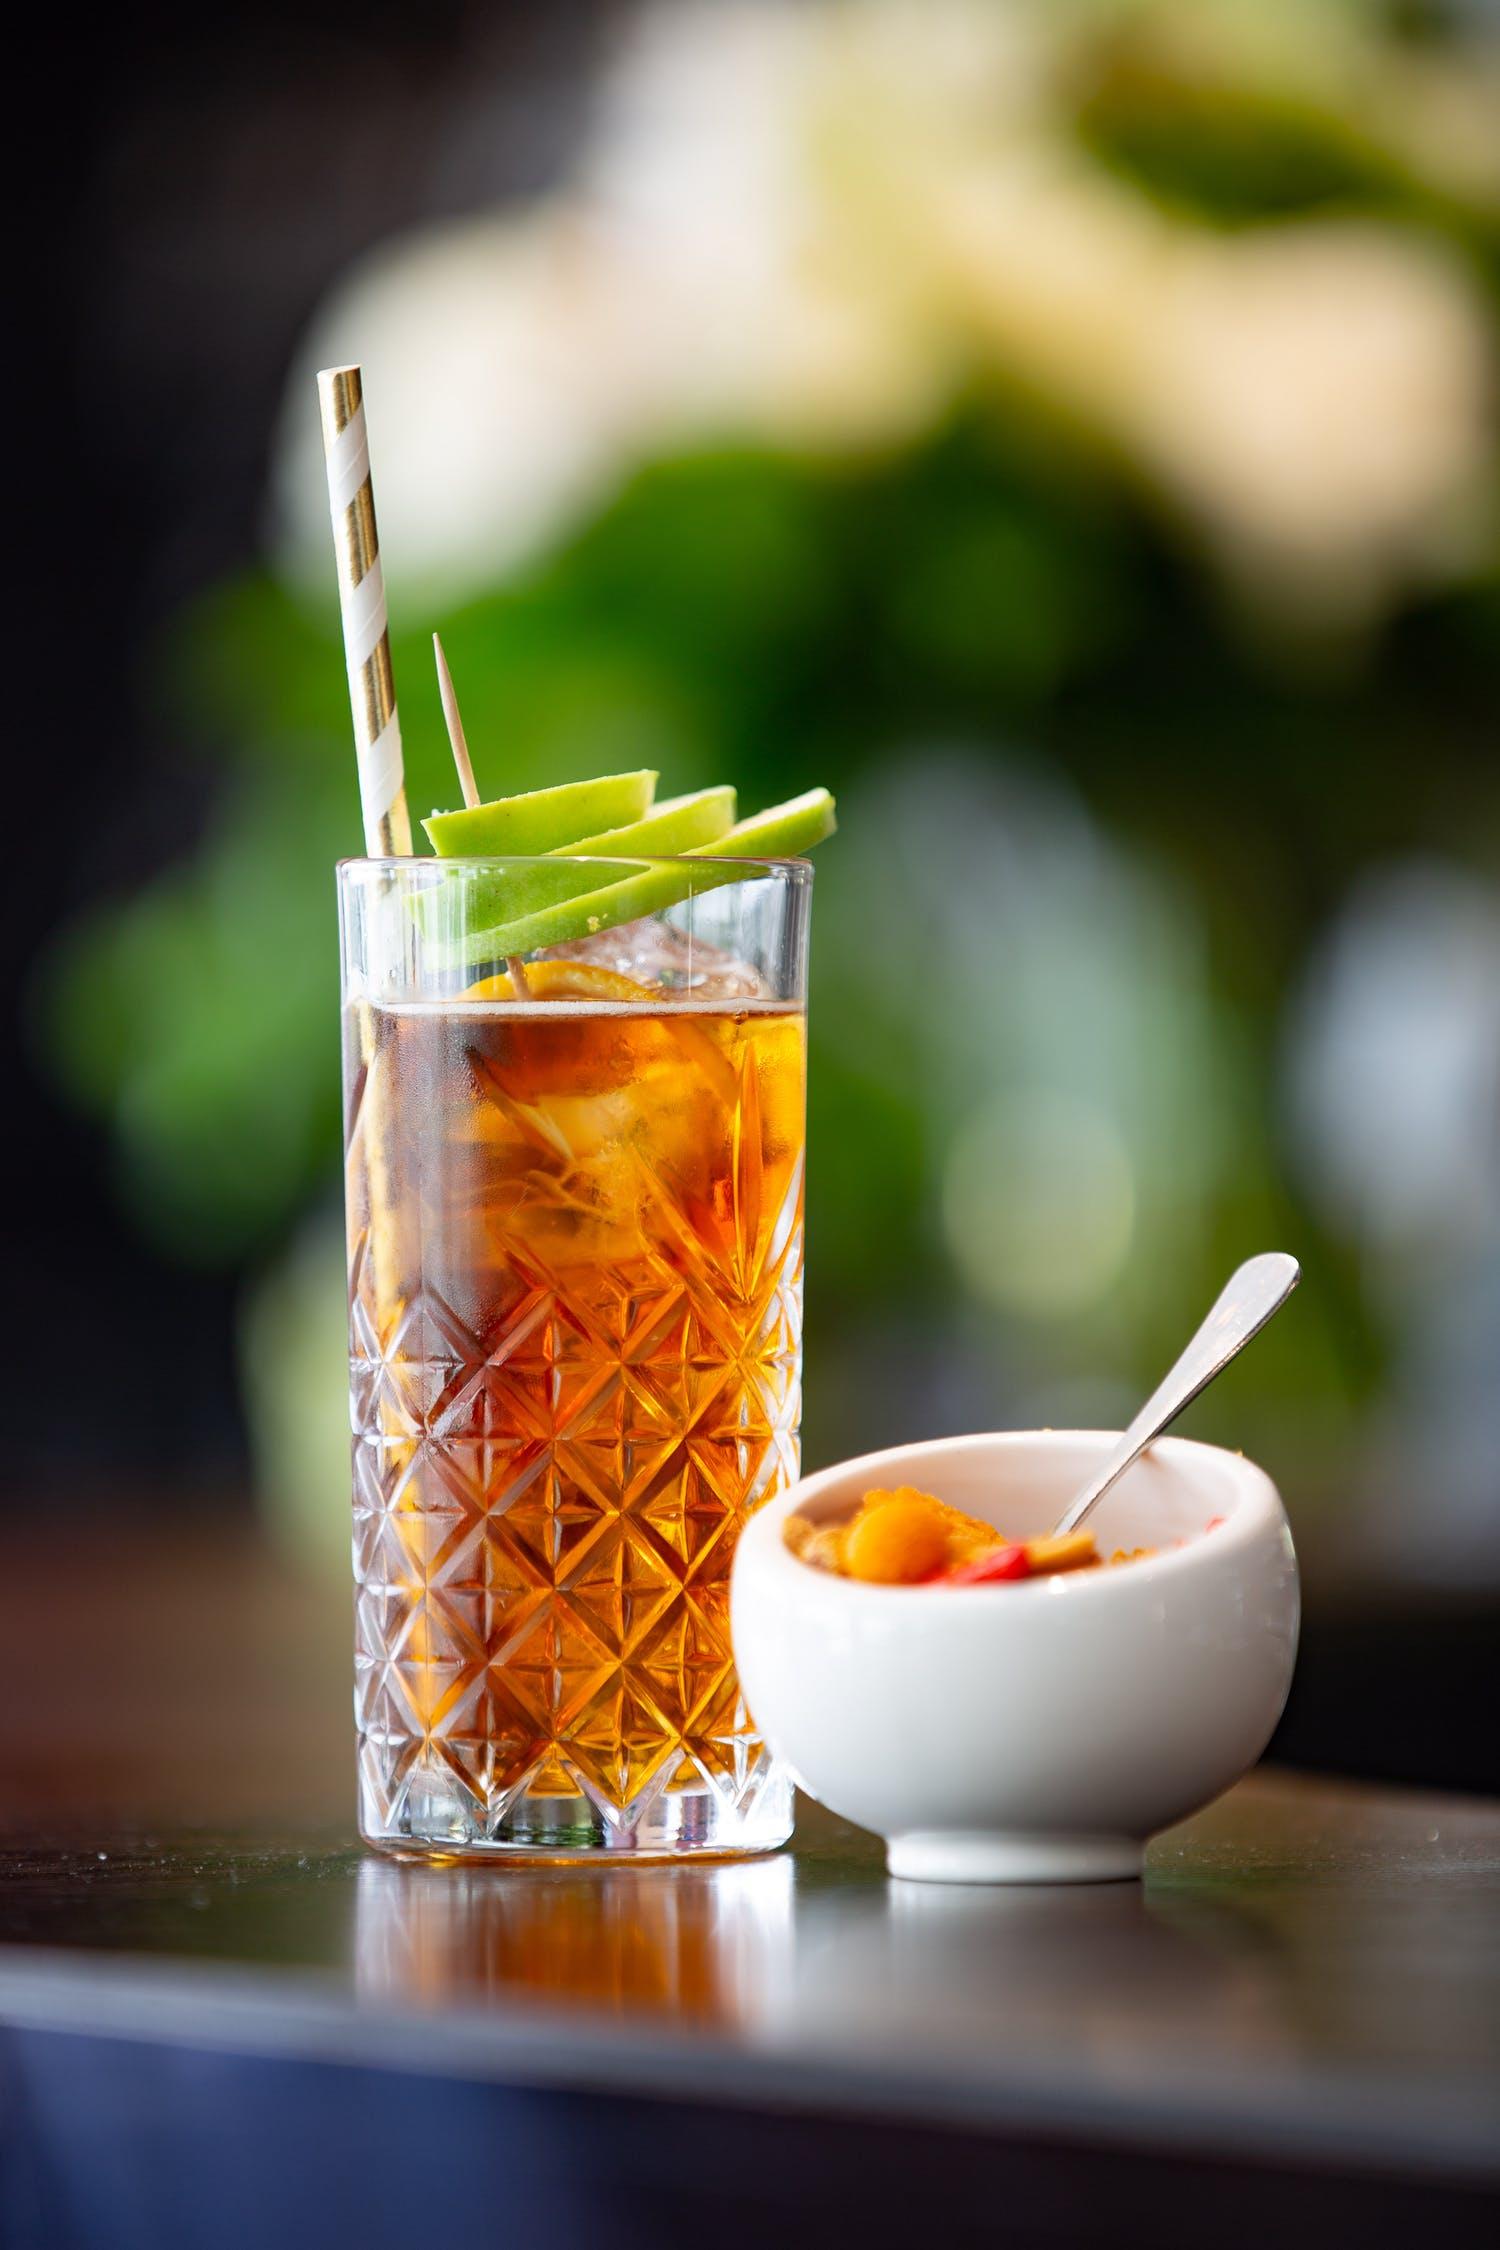 Чай – напиток королей: как разнообразить чаепитие в домашних условиях? 4 отличных рецепта чая